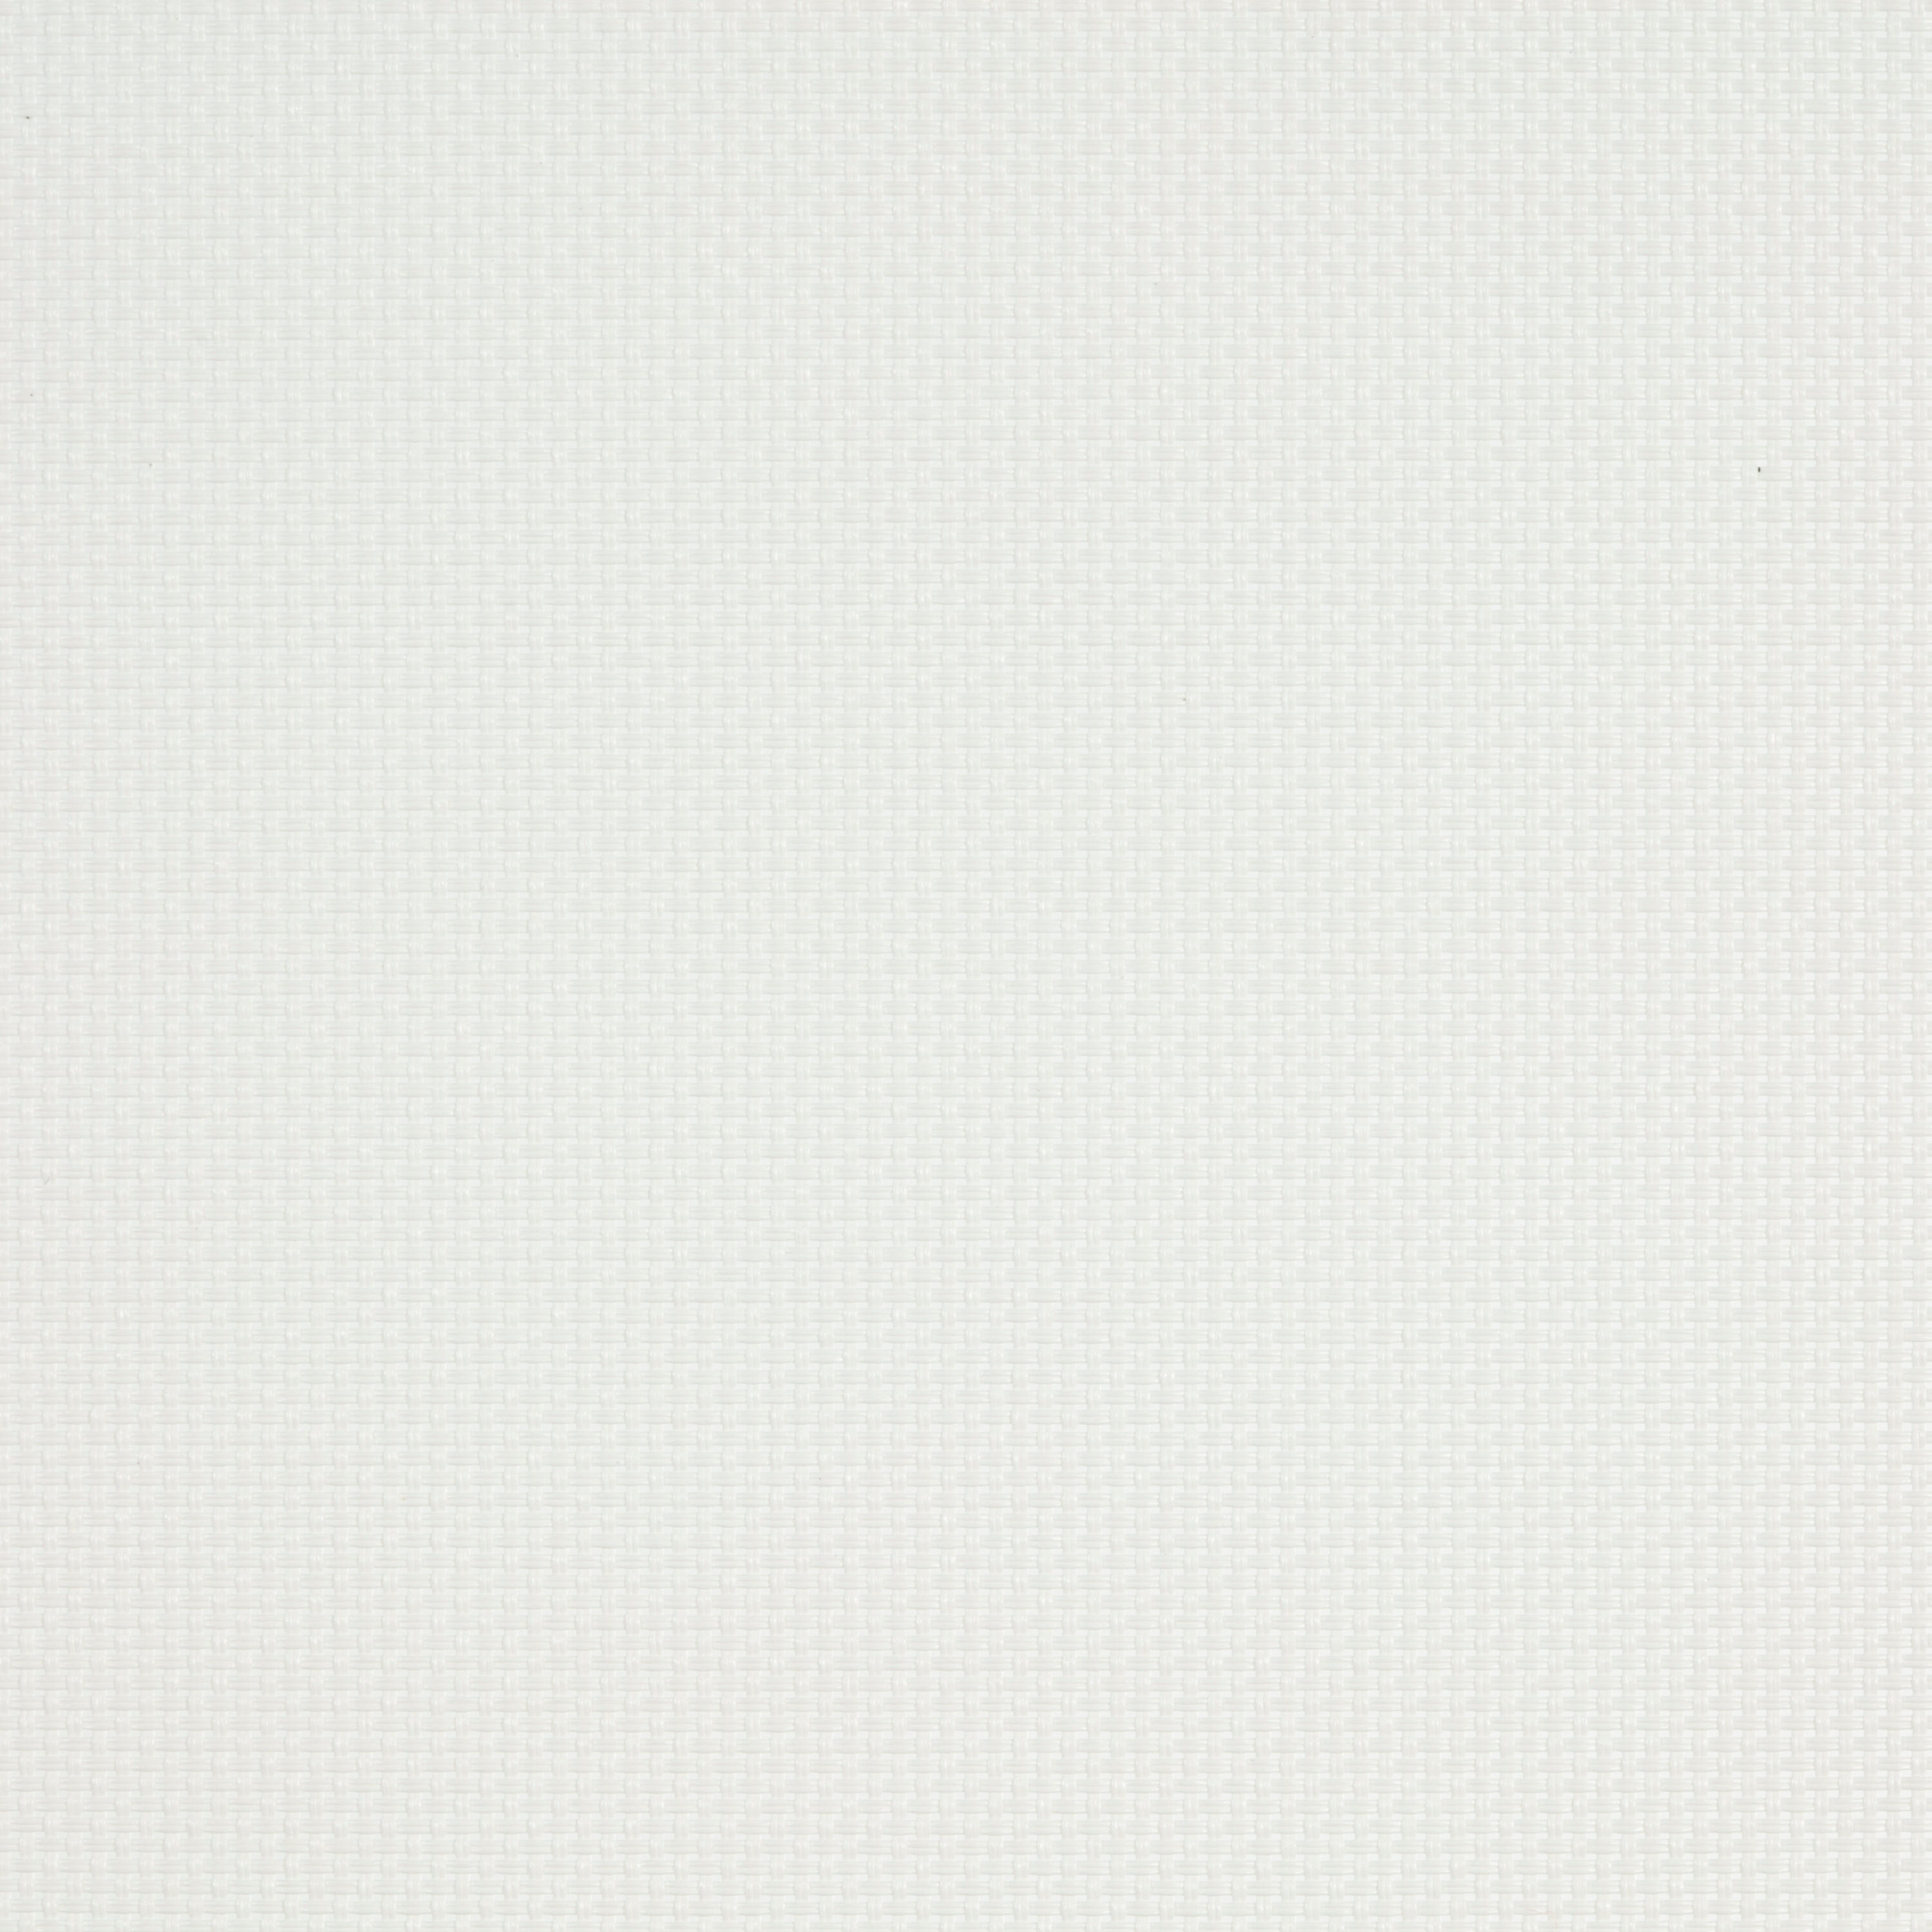 Tenda a rullo filtrante INSPIRE Brasilia bianco 150 x 250 cm - 3